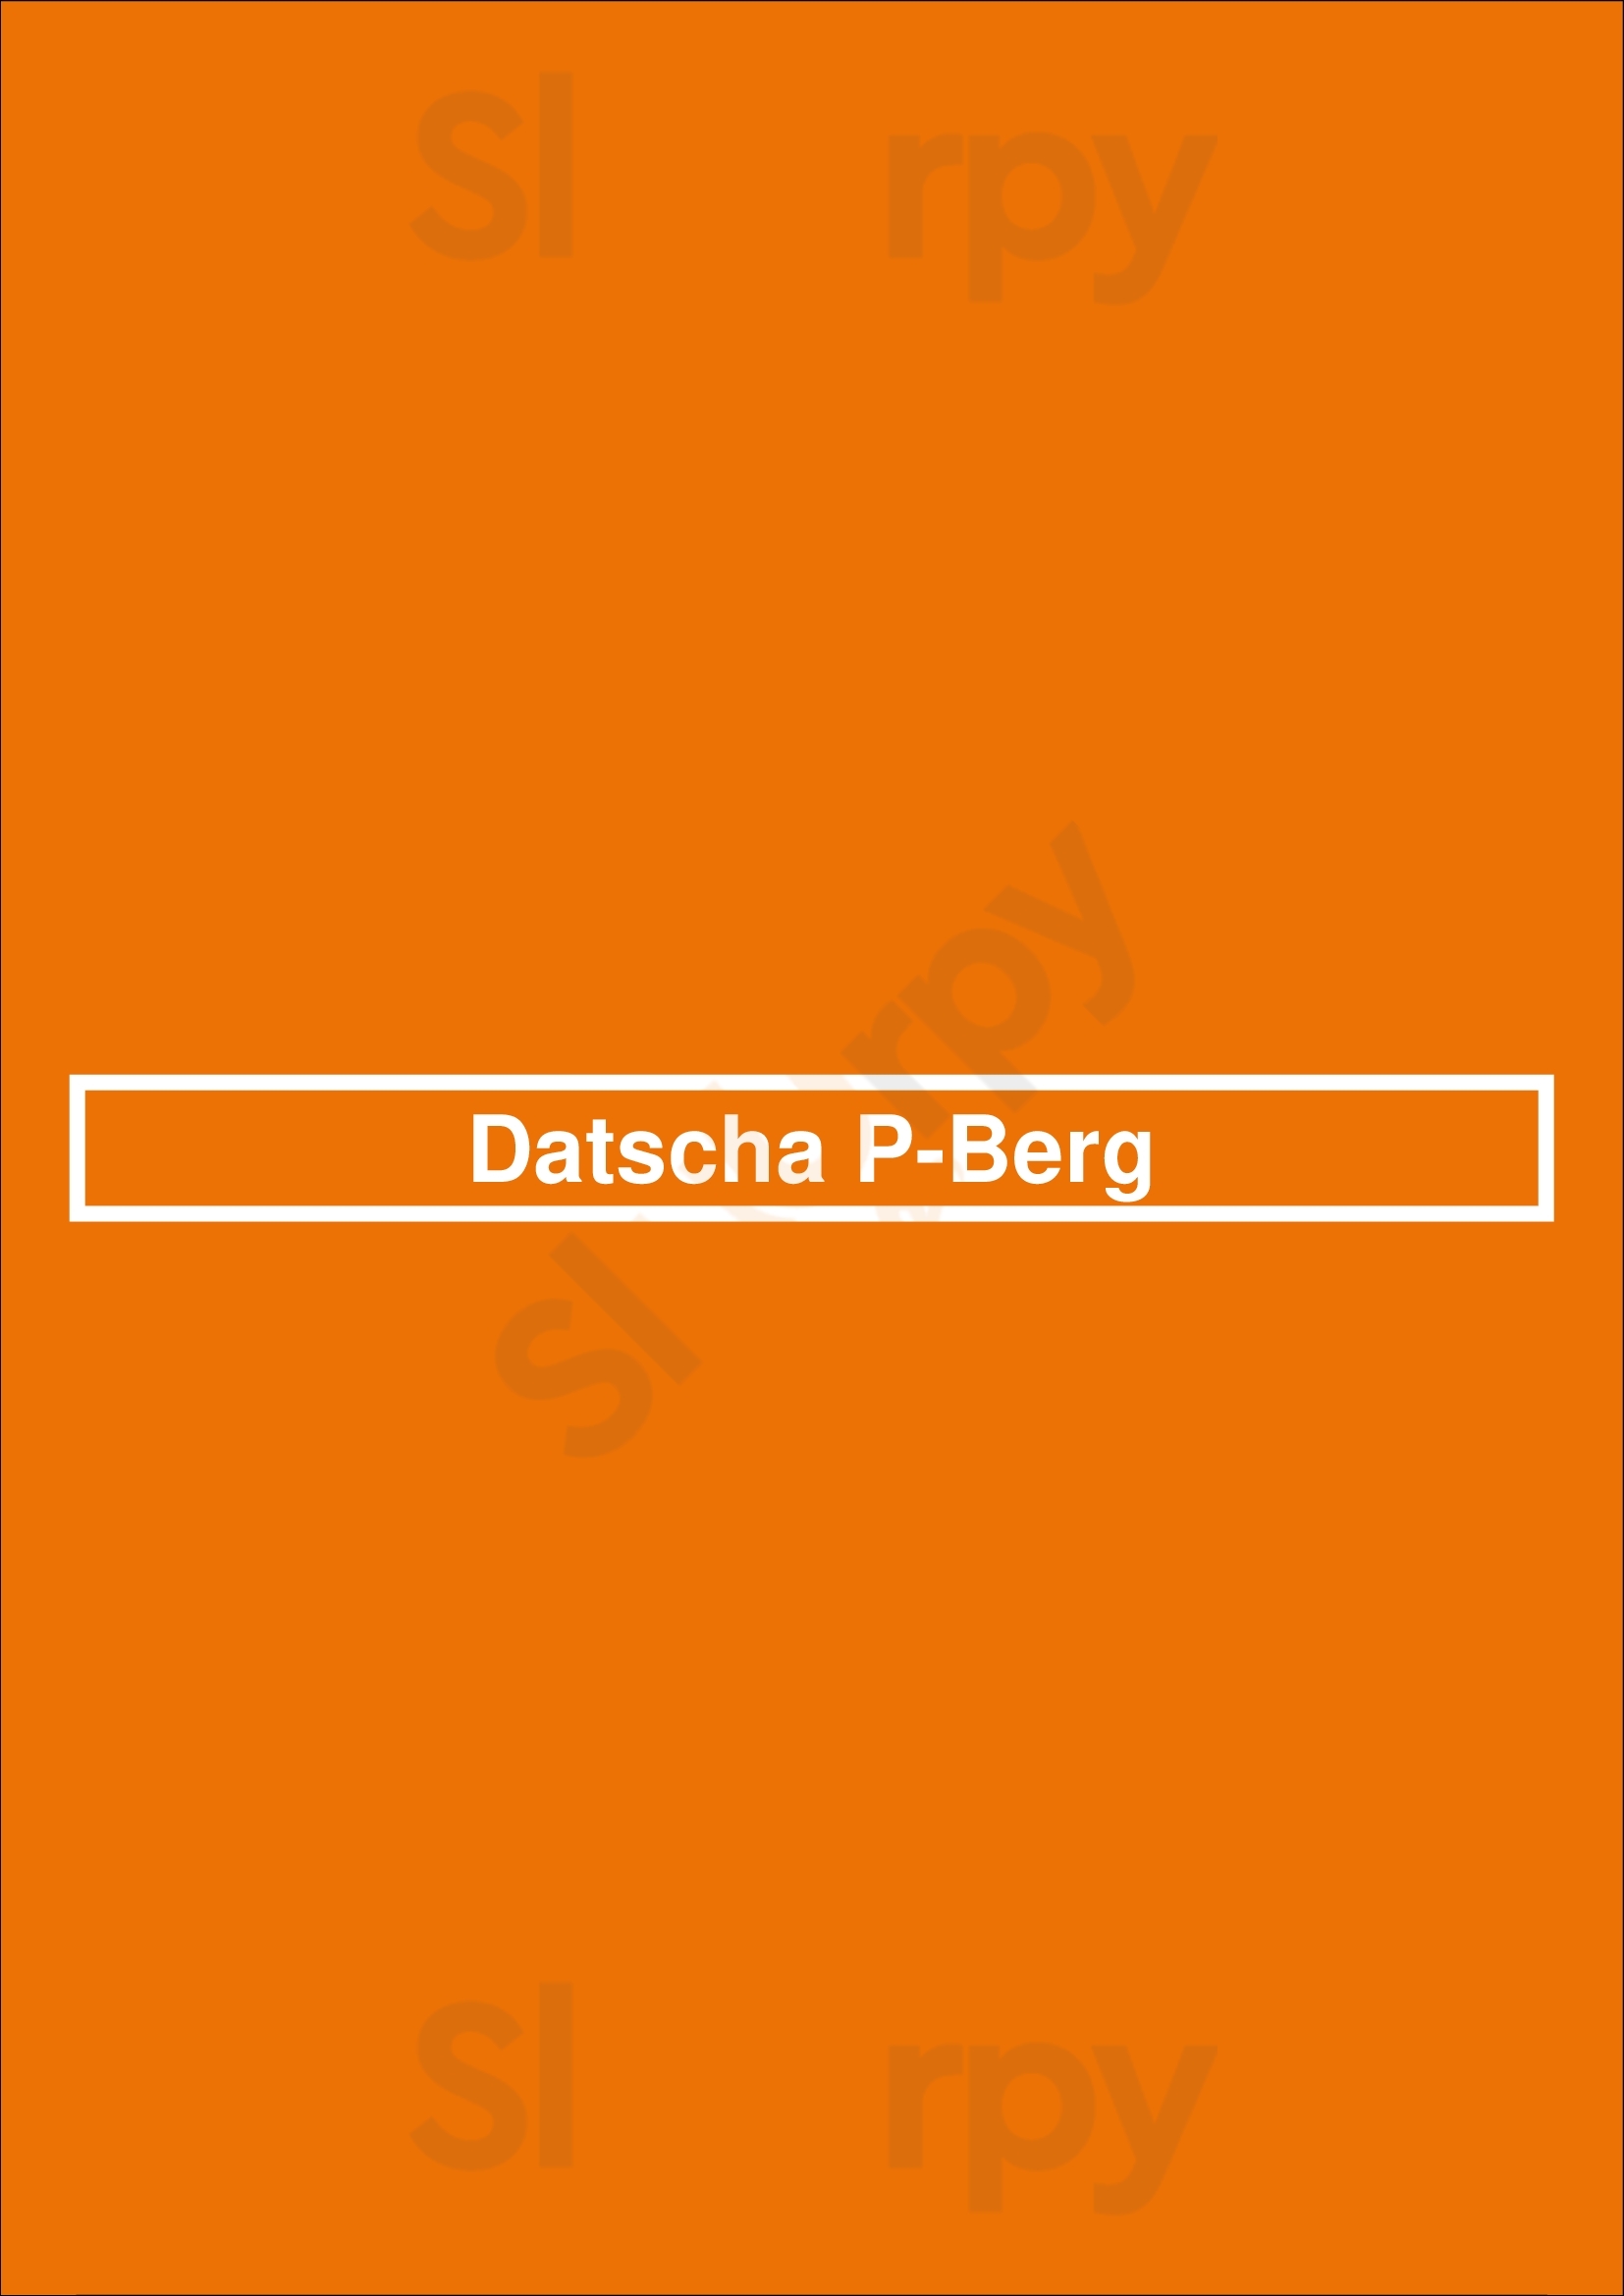 Café Datscha Prenzlauer Berg Berlin Menu - 1